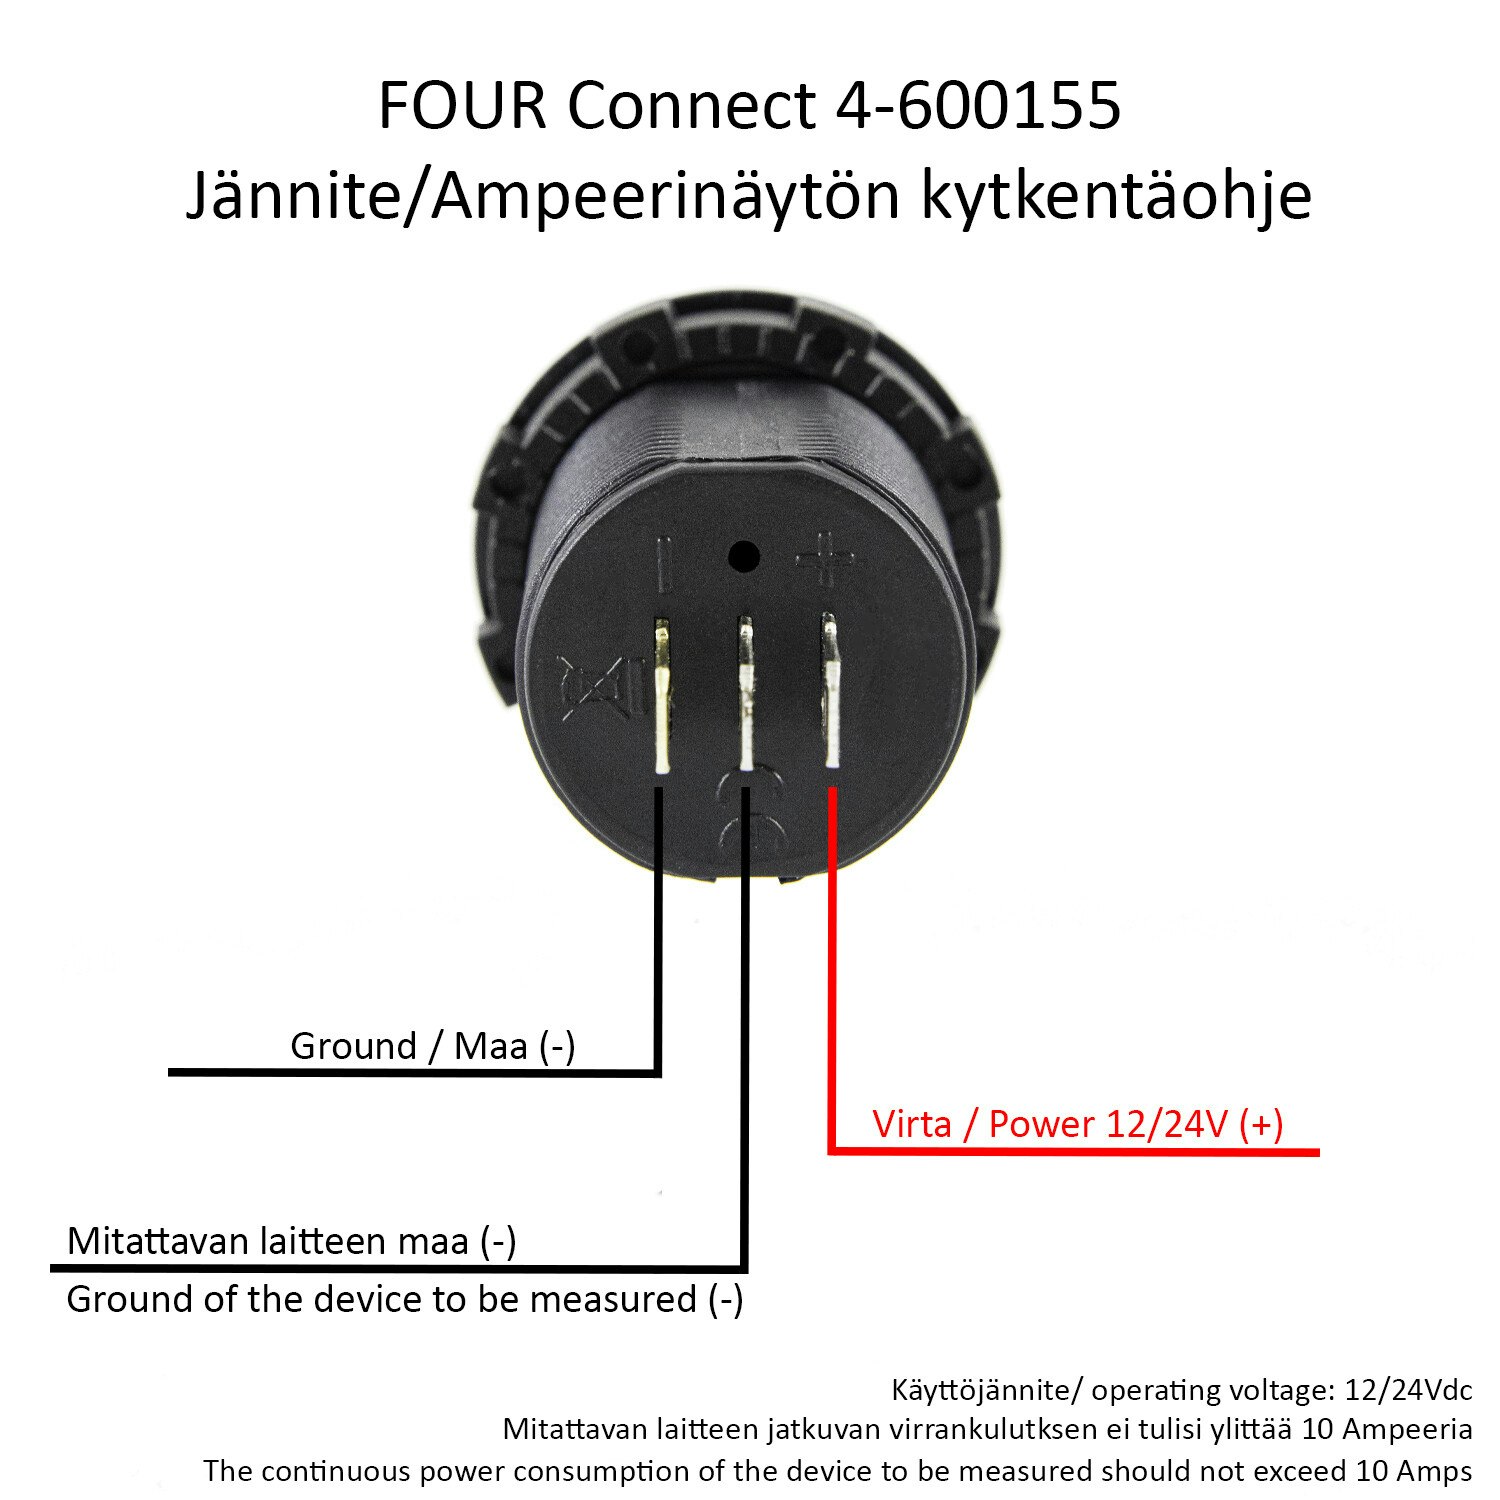 FOUR Connect 4-600155 voltmeter/ammeter 12/24V